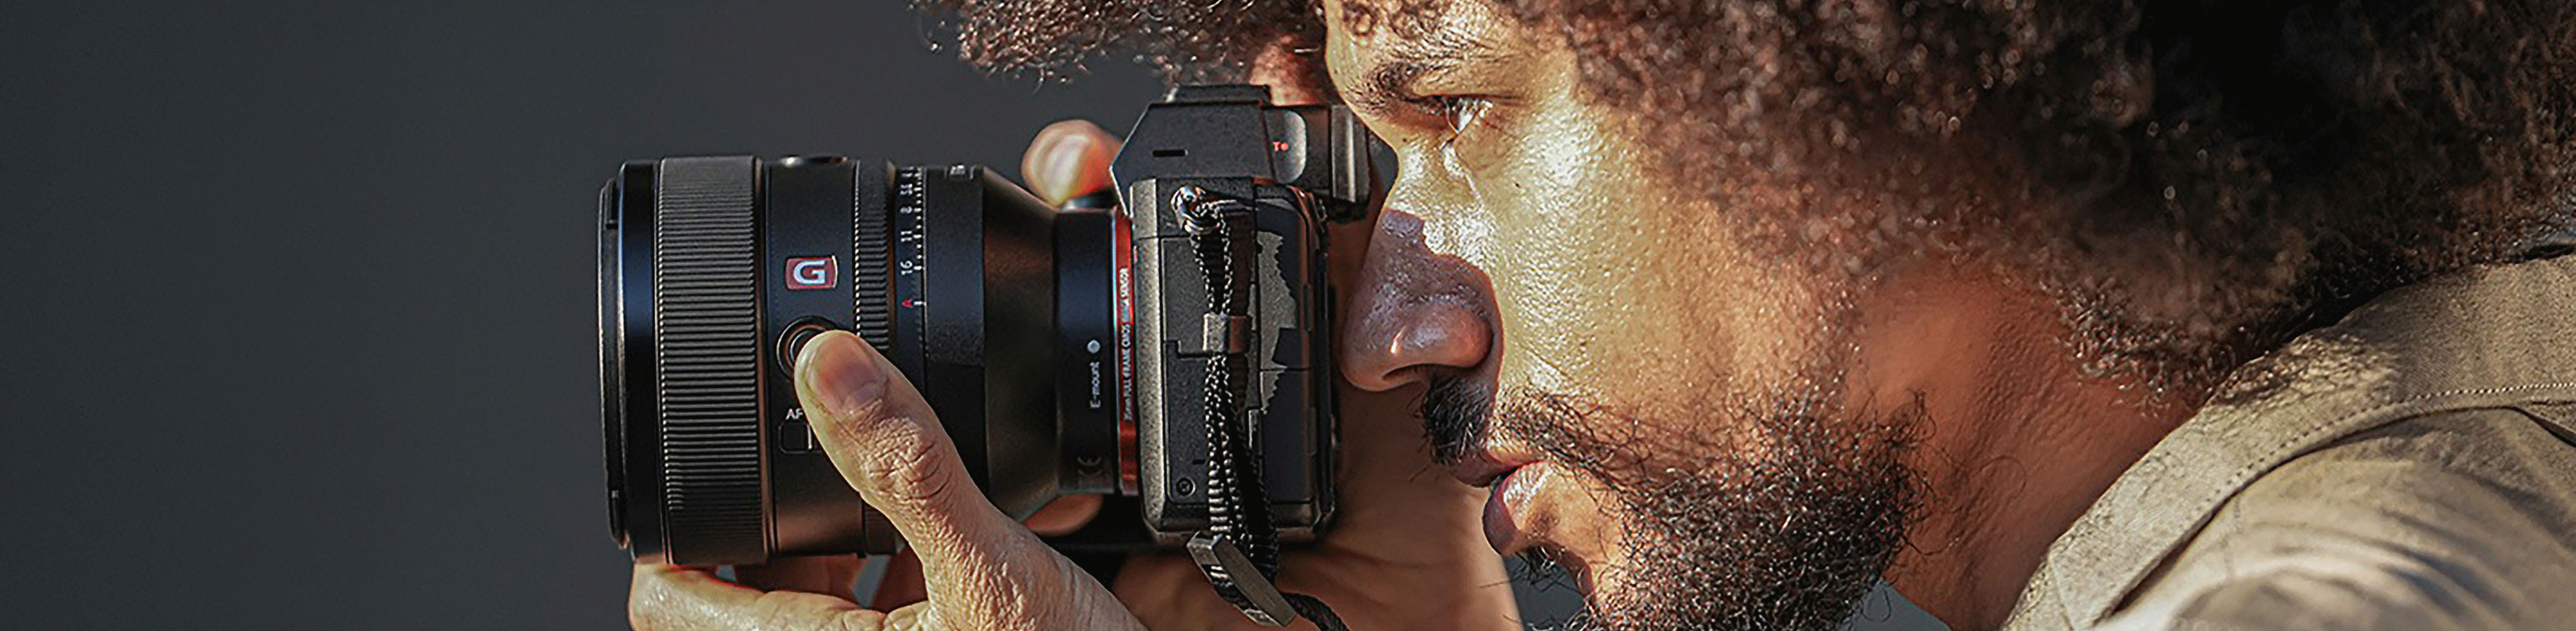 Imagen de una persona sujetando una cámara con la lente FE de 50 mm F1,2 GM acoplada